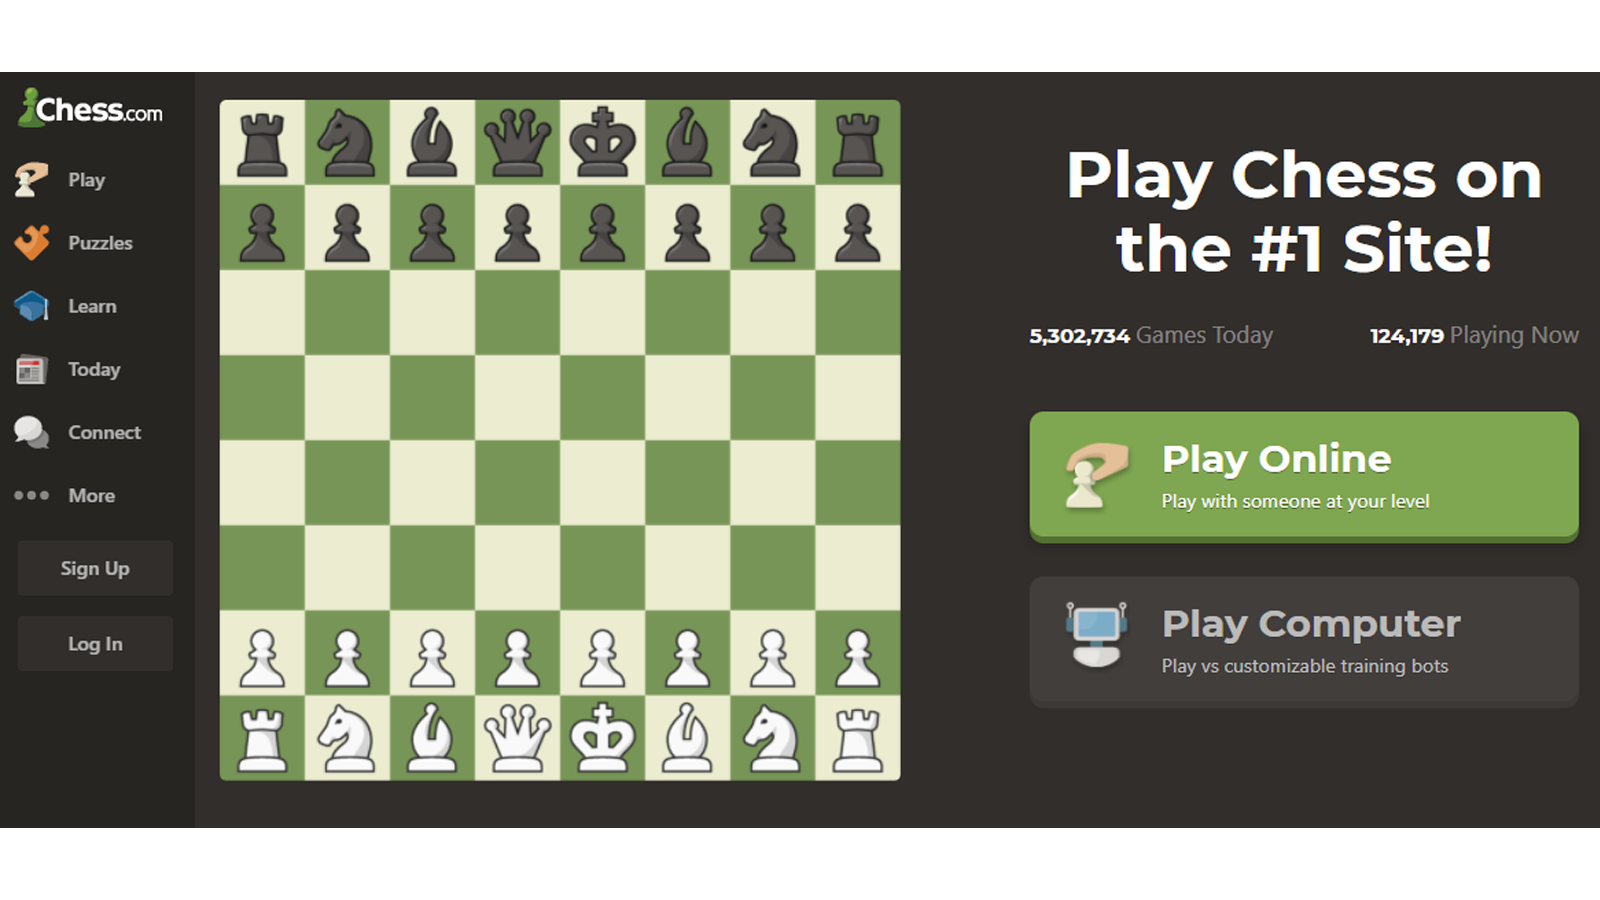 chess.com hemsida med alternativ för att spela spelet eller registrera dig